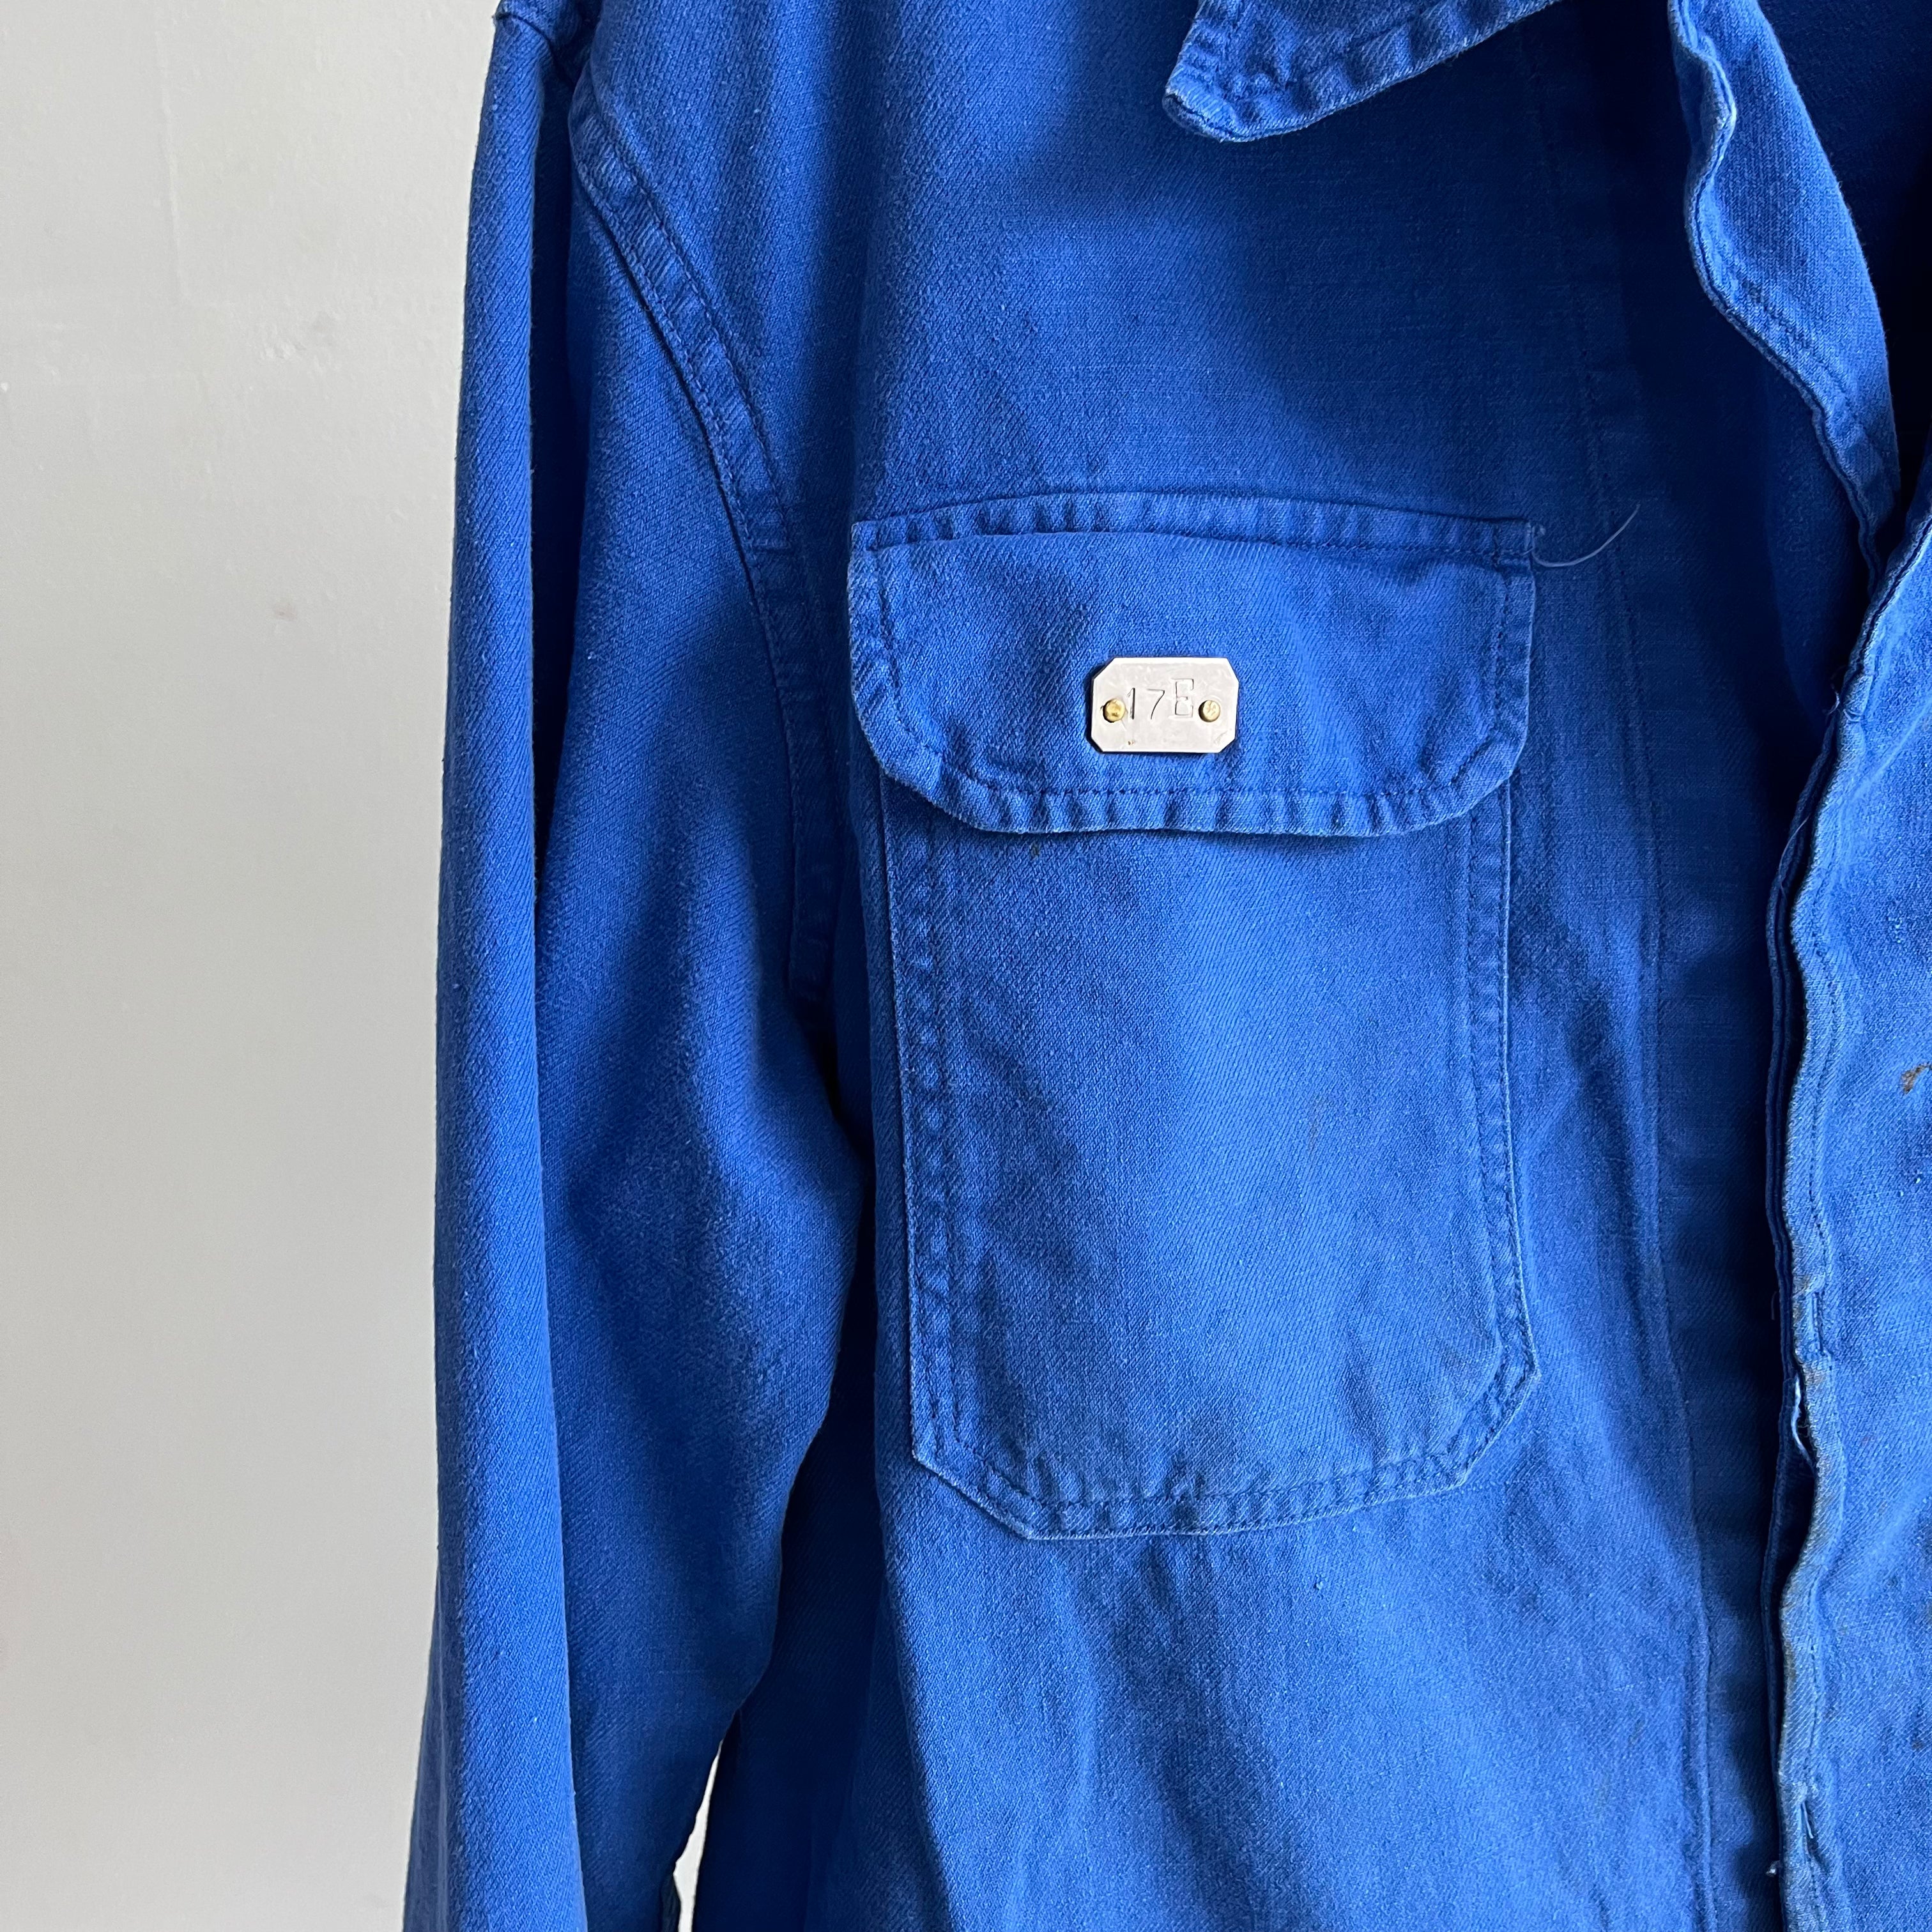 Manteau de corvée en coton 17B français/euro des années 1970 avec poches poitrine et raccommodage